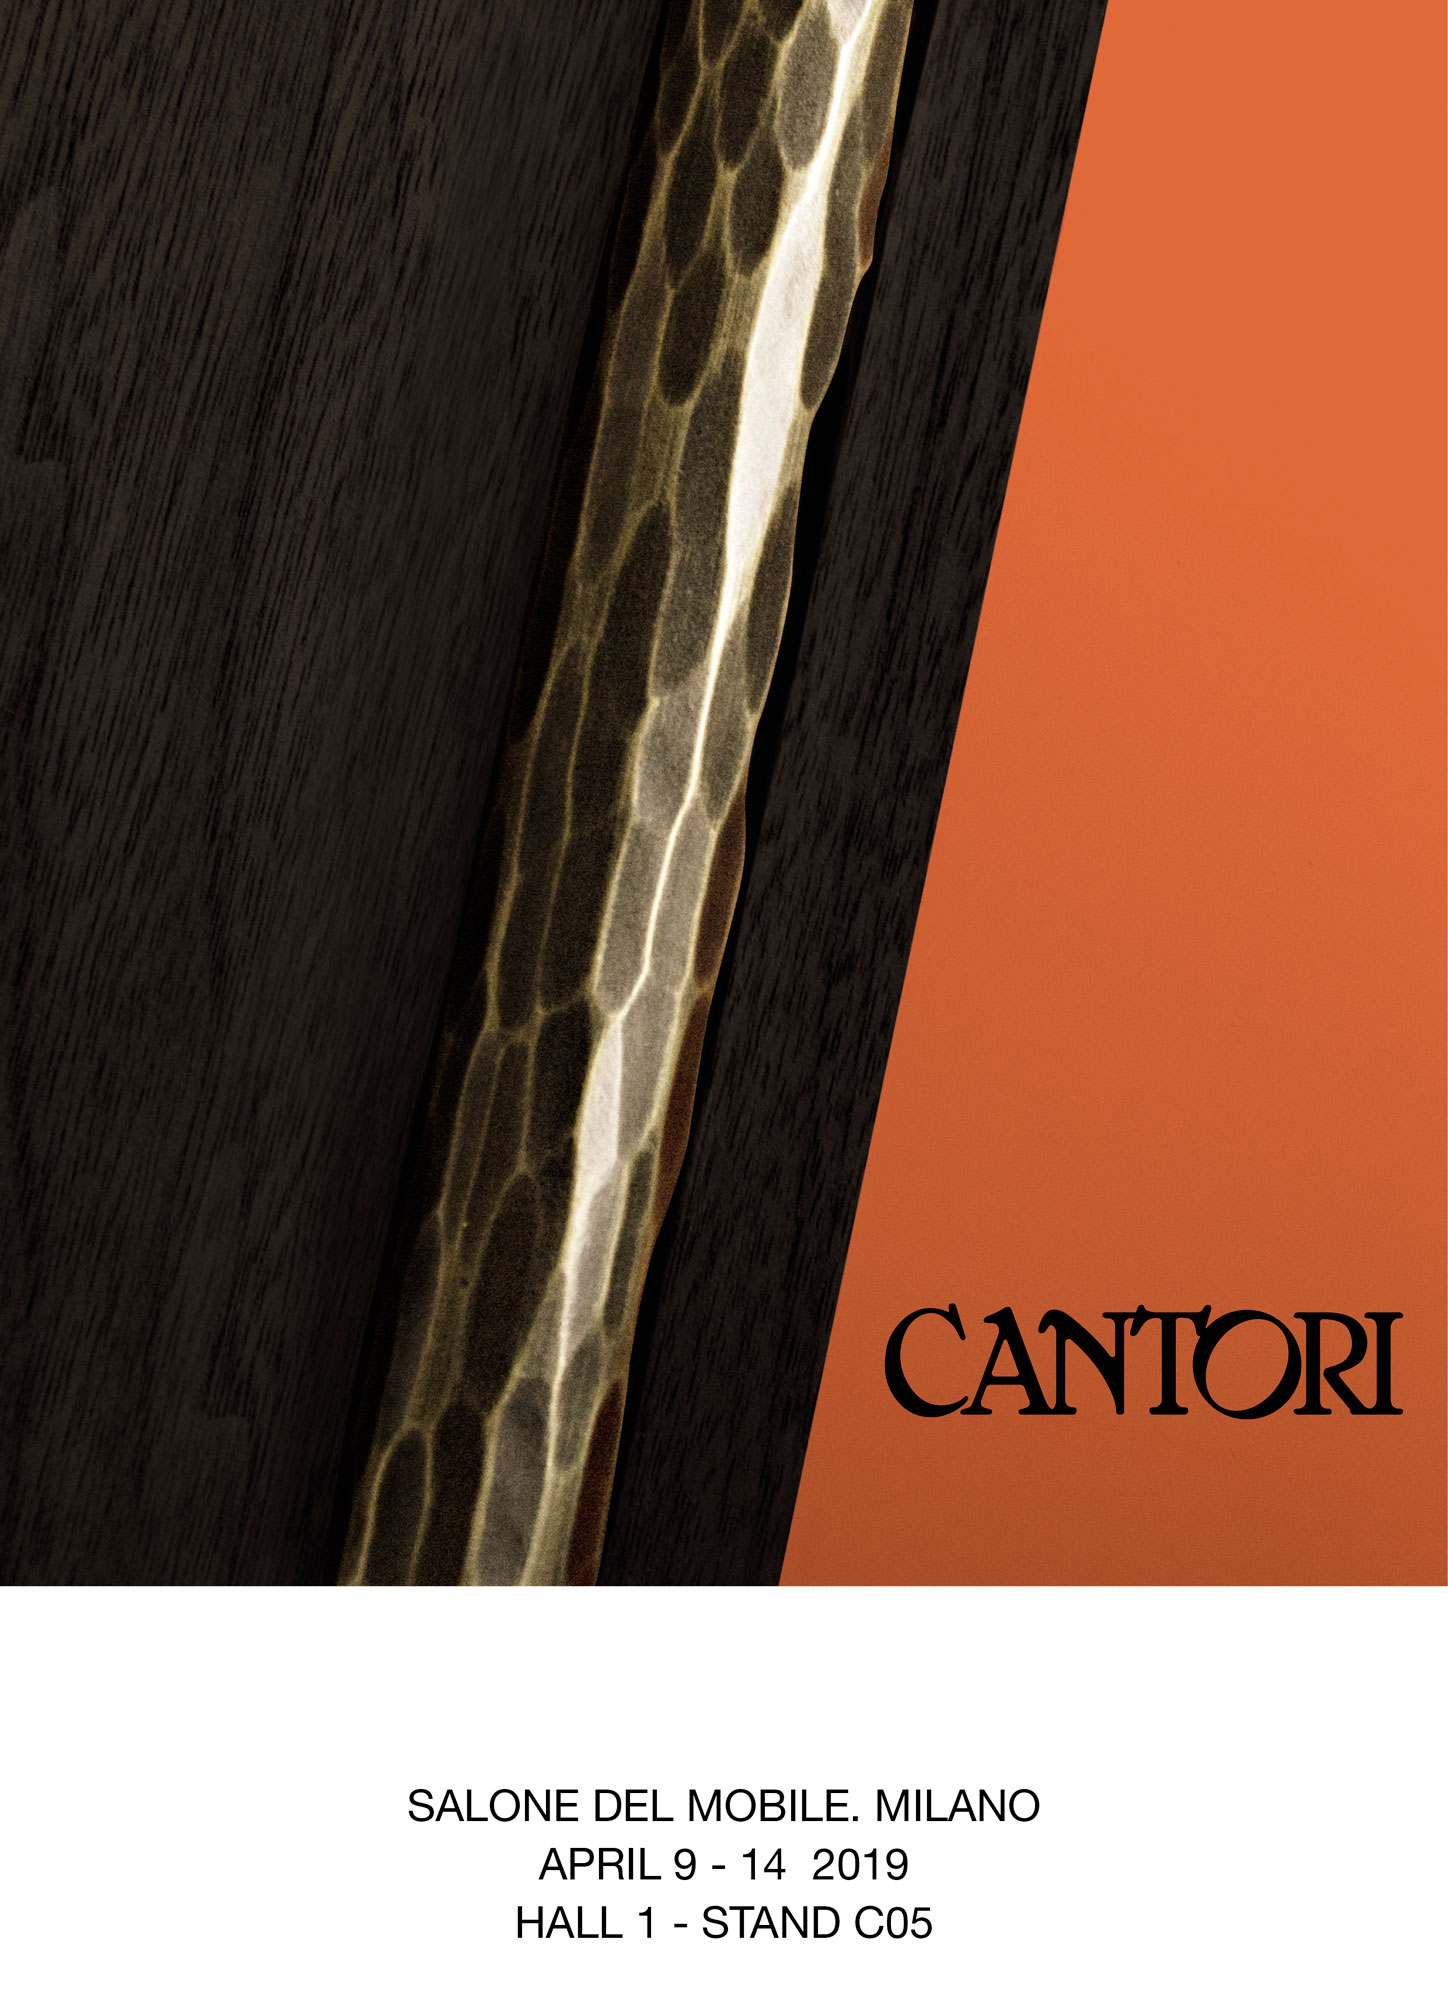 Cantori at Salone del Mobile of Milano 2019 - Cantori